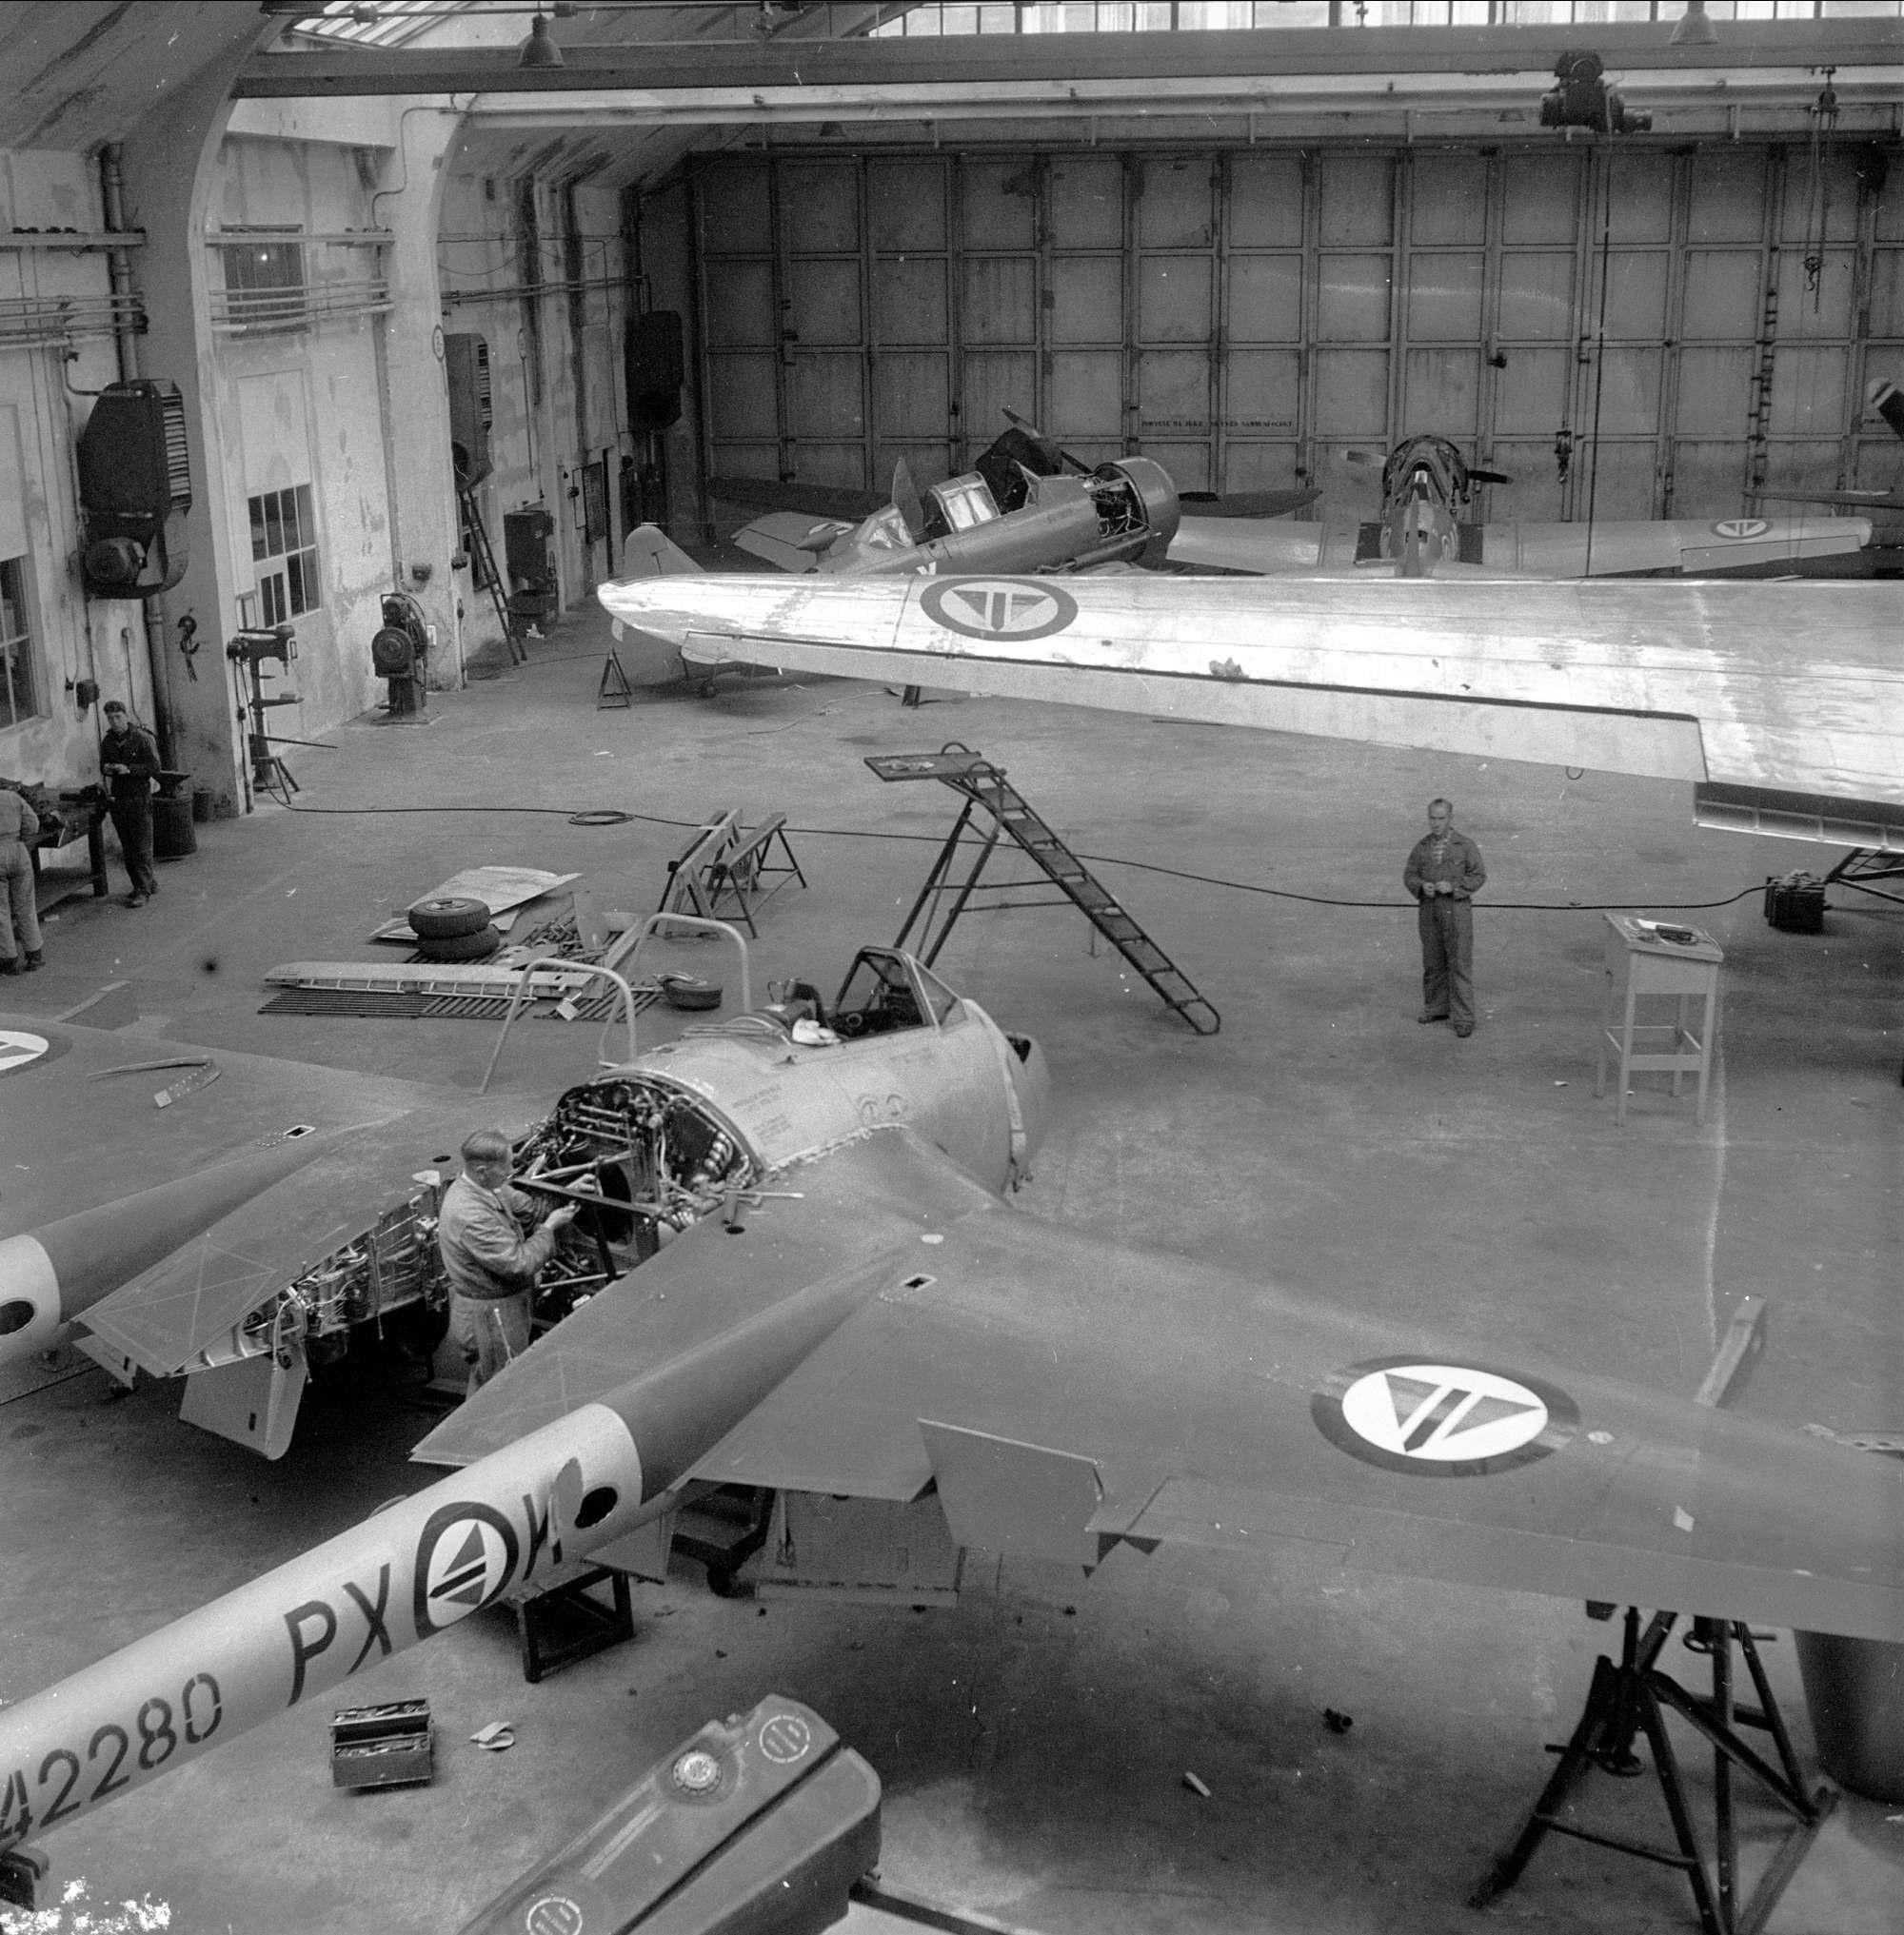 Bildet viser Vedlikehold av fly ved Kjeller, i forkant en DH Vampire, vingen til en DC3 Dakota og to skolefly av type North American T-6/J Harvard. Bildet er tatt i 1952 i forkant av 40-års markeringen til Kjeller. Foto er lånt fra Dagbladet/Norsk Folkemuseum